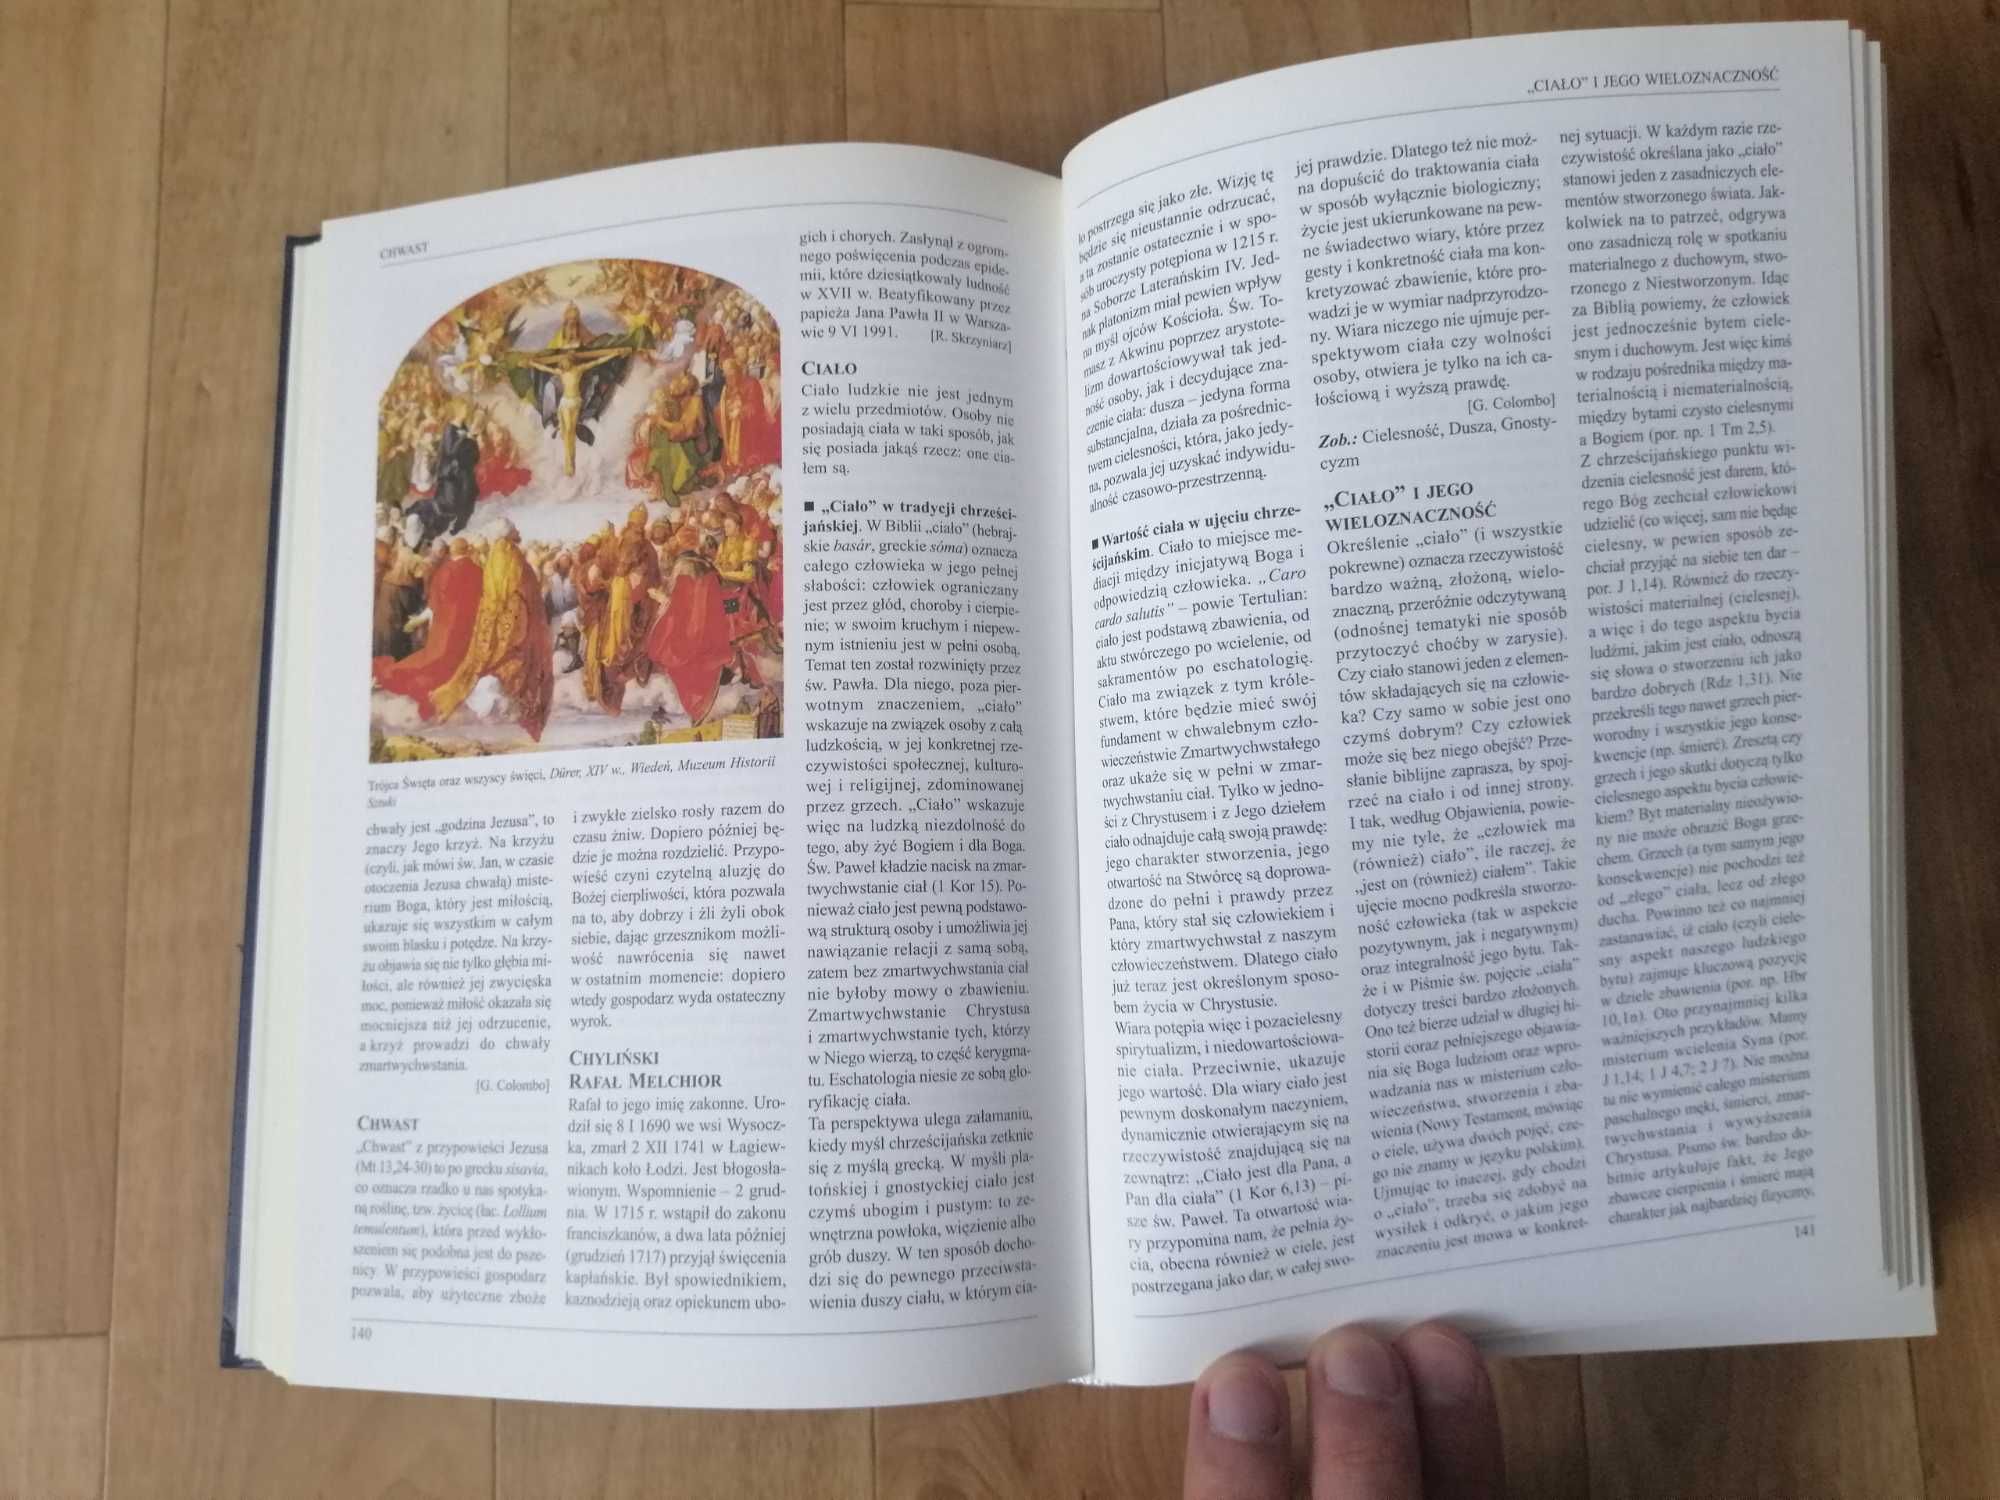 Encyklopedia chrześcijaństwa